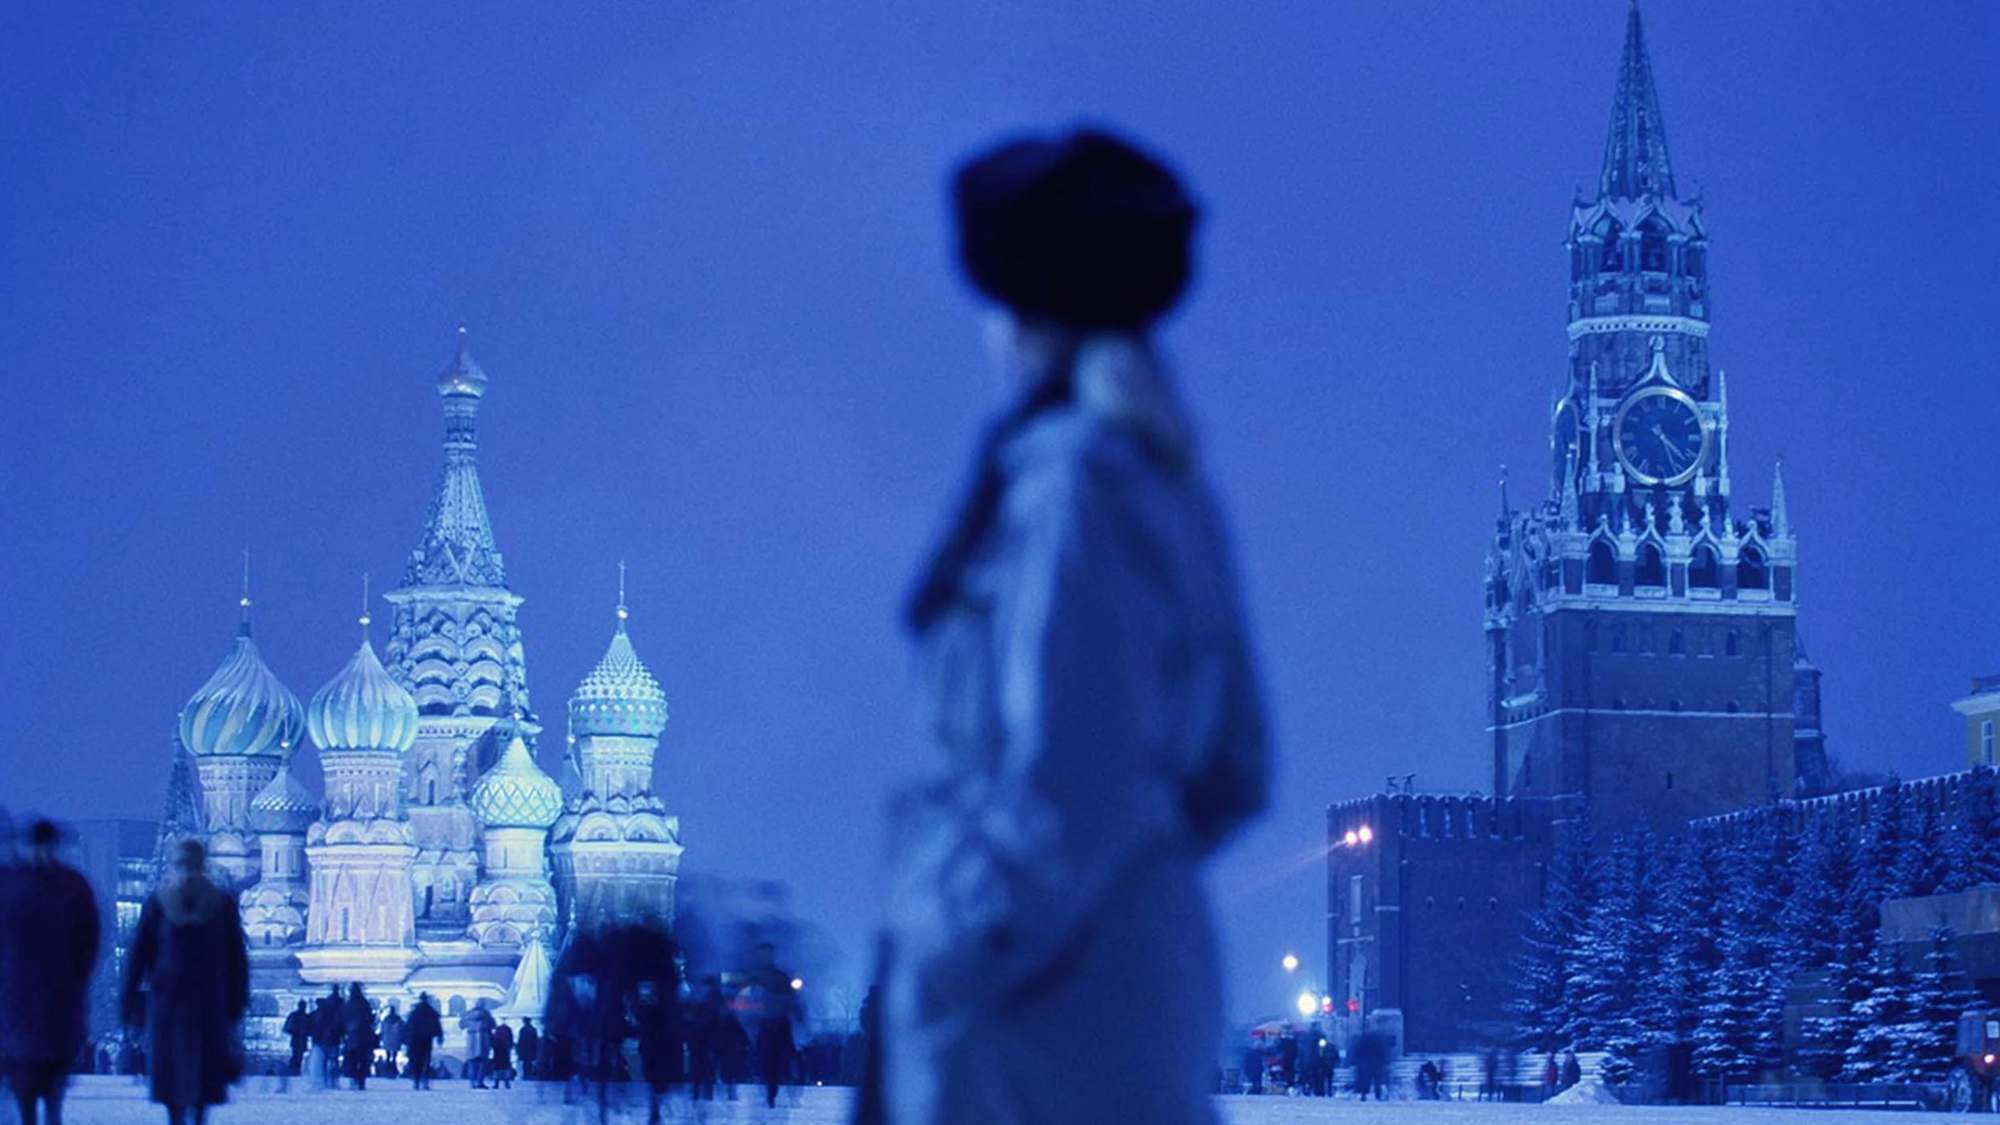 Đằng sau sự mờ ám của Moscow, các lệnh trừng phạt đang khiến Nga phải hứng chịu. Ảnh: @AFP.